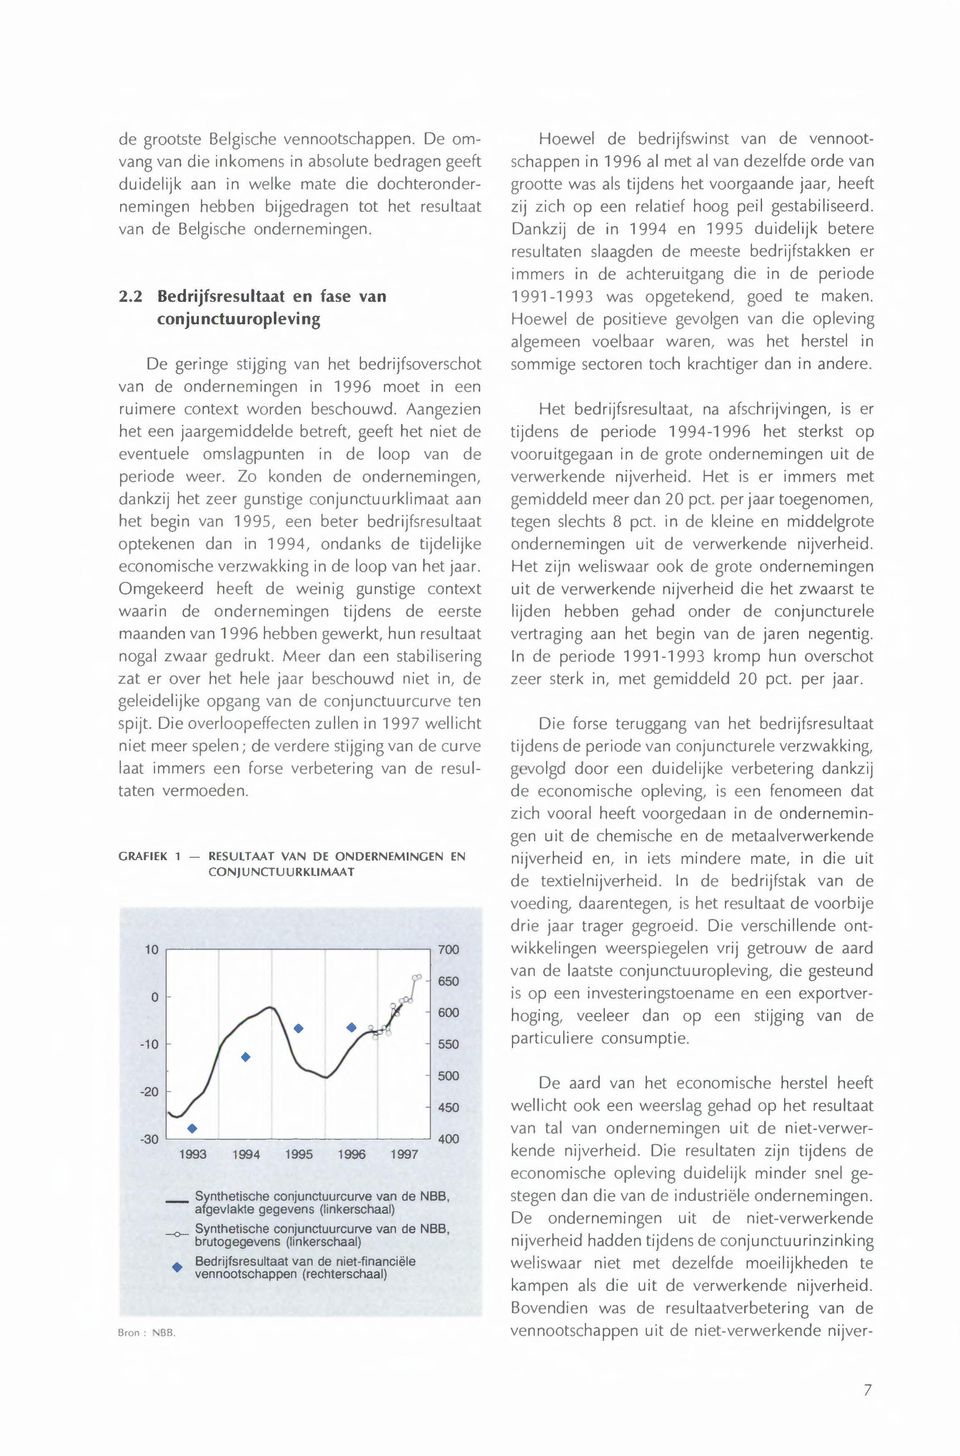 2 Bedrijfsresultaat en fase van conjunctuuropleving De geringe stijging van het bedrijfsoverschot van de ondernemingen in 1996 moet in een ruimere context worden beschouwd.